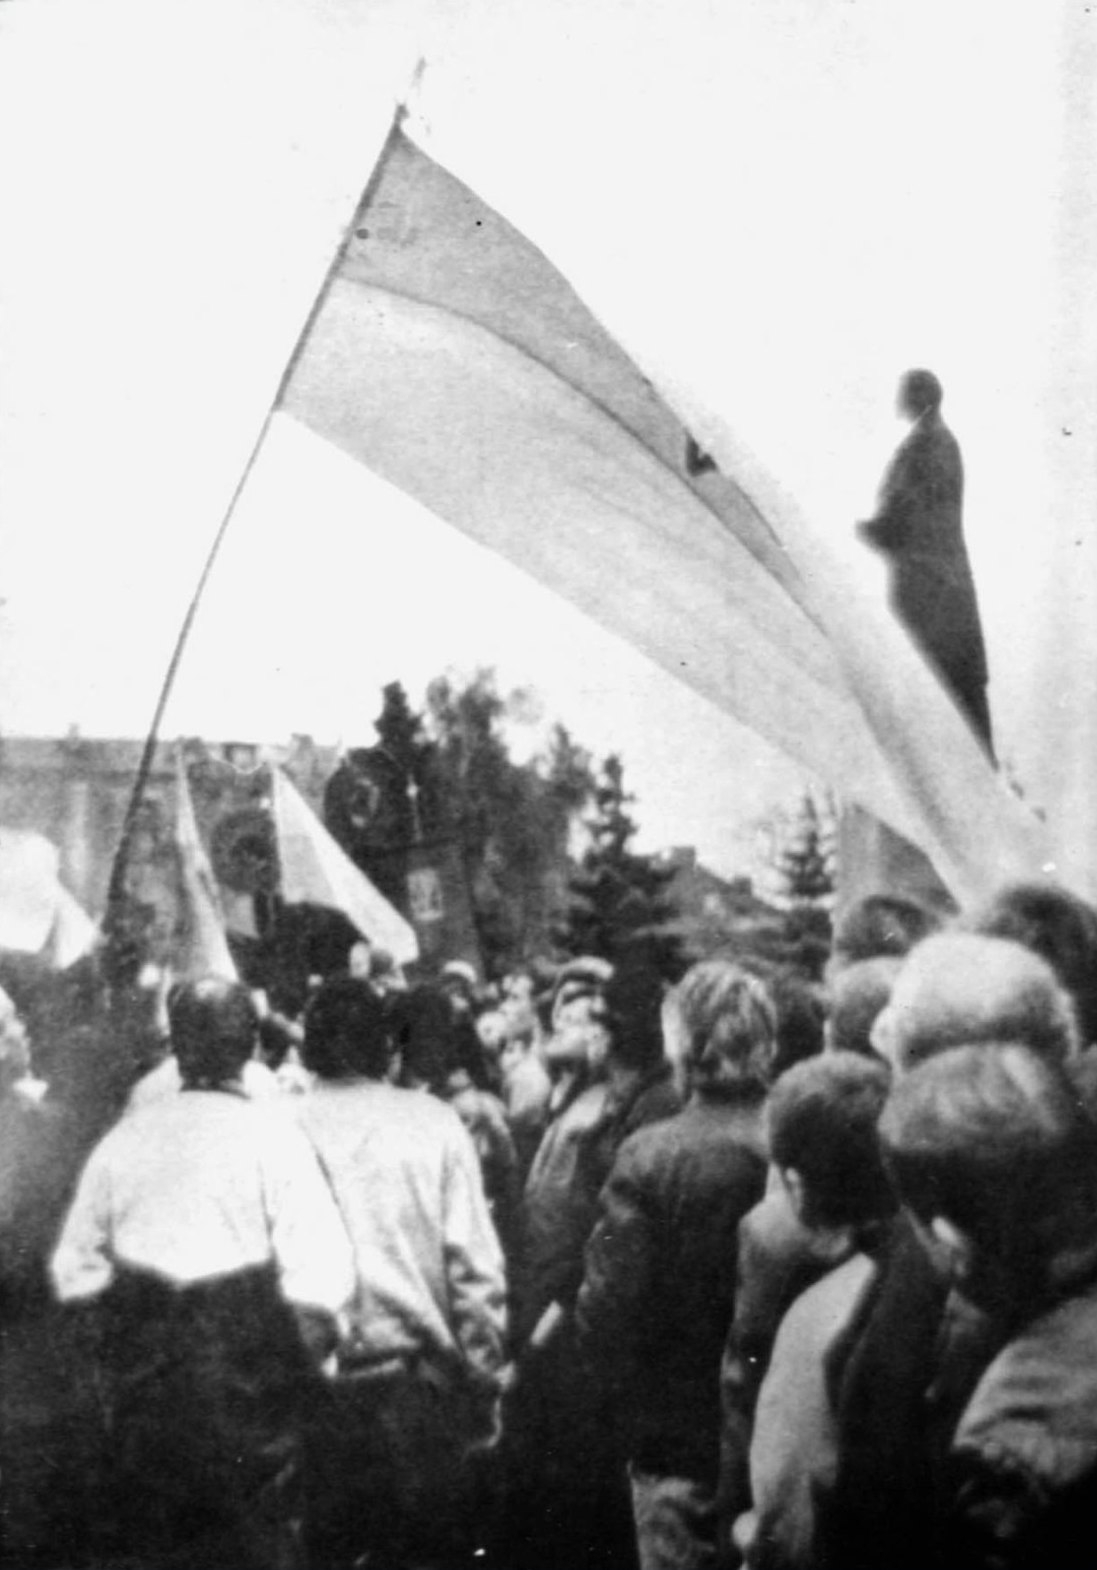 Шлях до проголошення незалежності - ключові події 80-90-х років у Вінниці